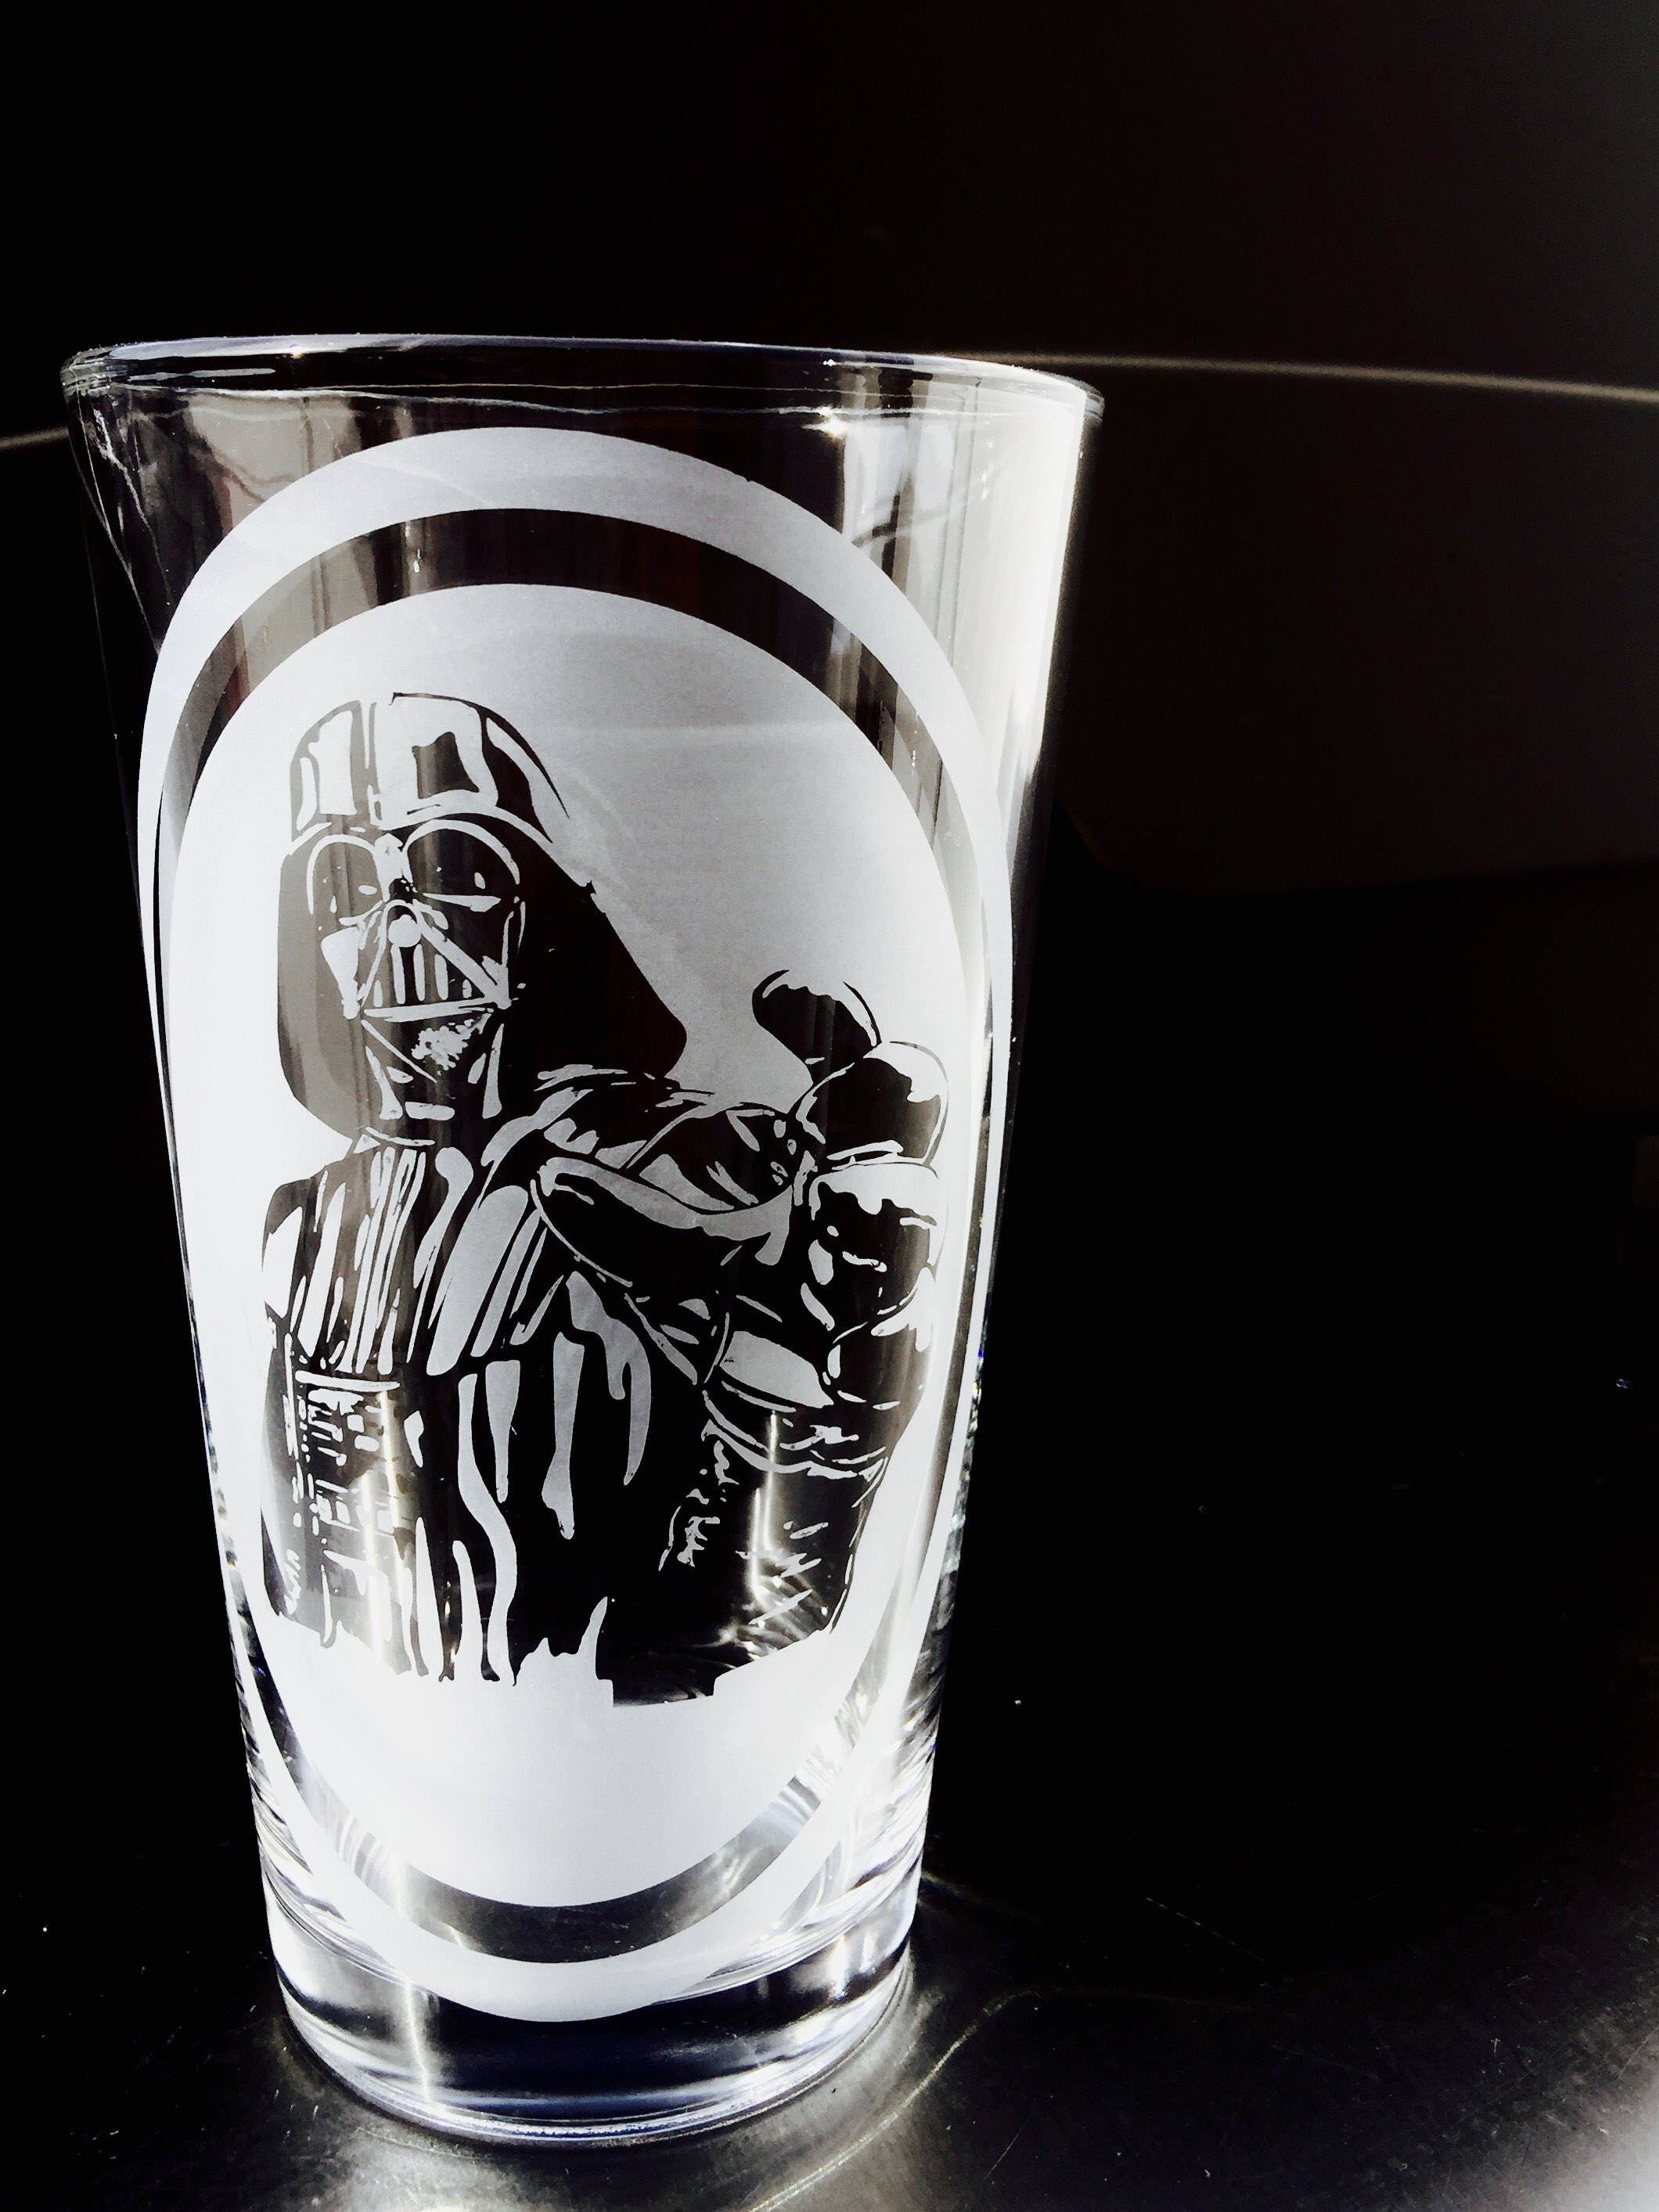 Geeknet Star Wars Darth Vader Free Time 16oz Pint Glasses GameStop  Exclusive 4-Pack